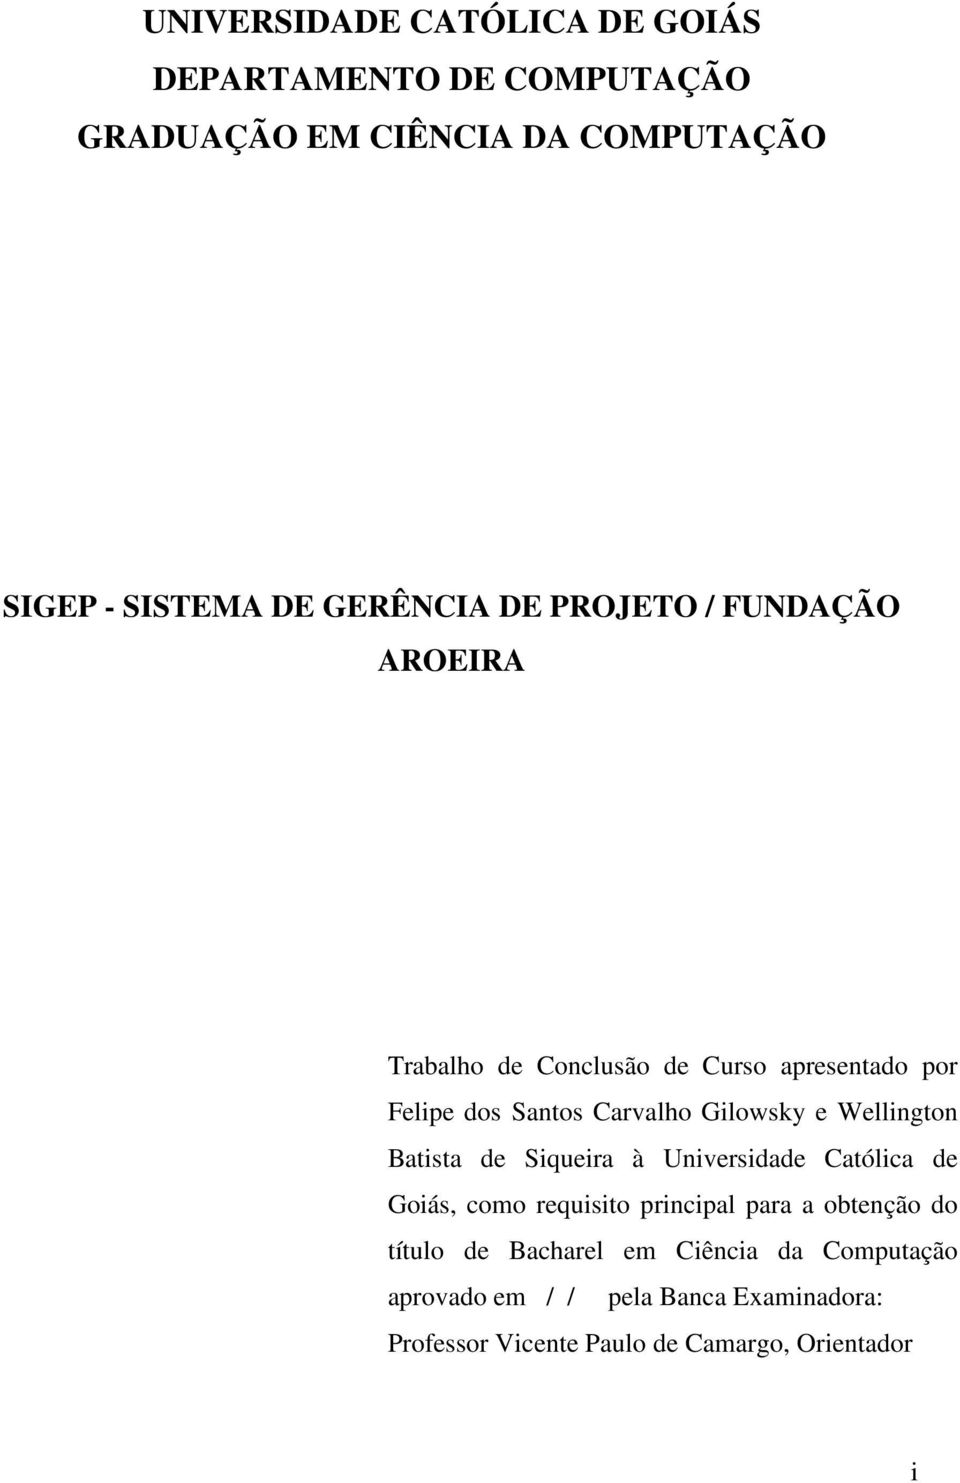 Gilowsky e Wellington Batista de Siqueira à Universidade Católica de Goiás, como requisito principal para a obtenção do